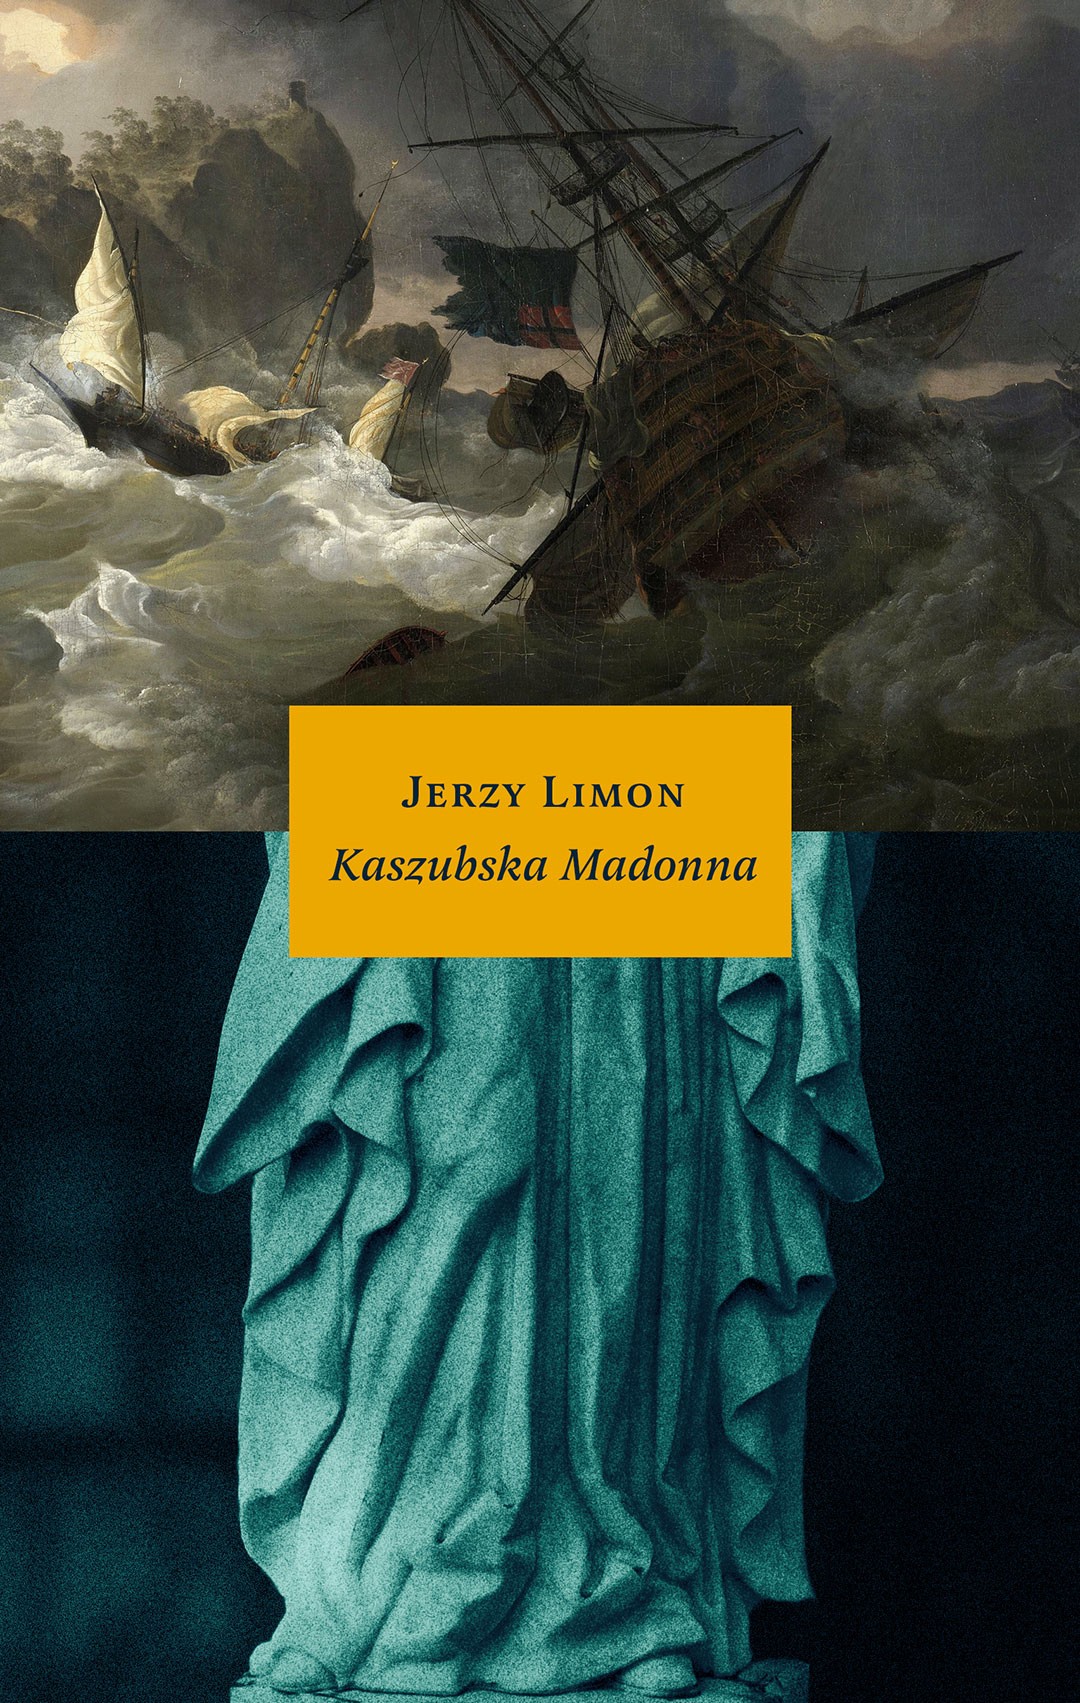 Kaszubka Madonna, Jerzy Limon, Fot. wydawnictwo słowo/obraz terytoria